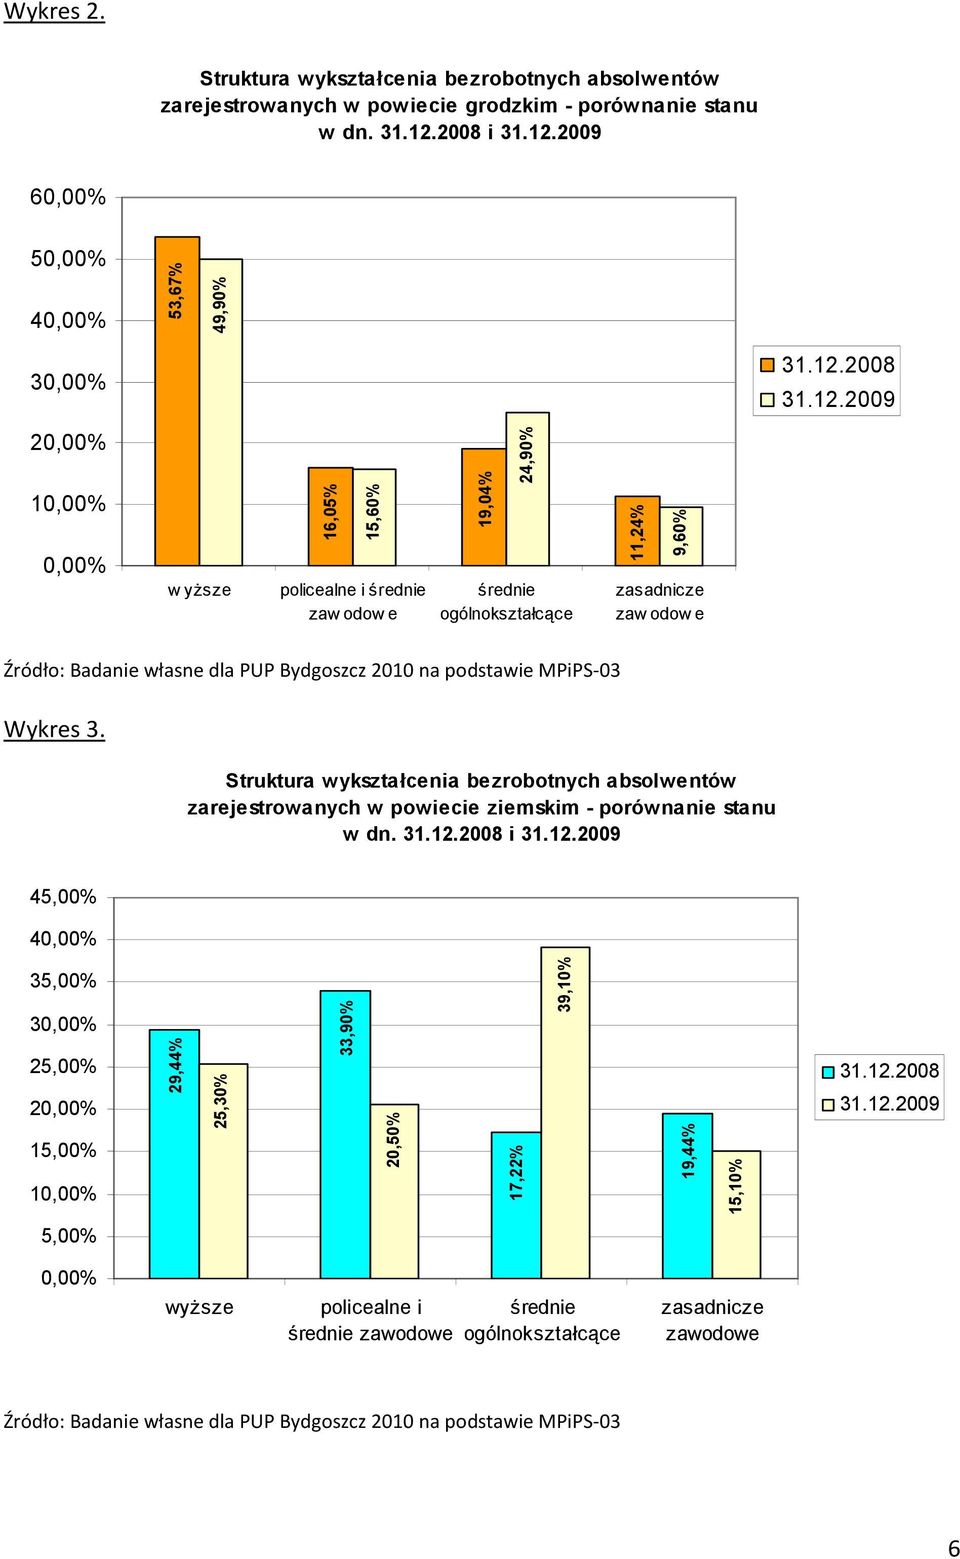 2010 na podstawie MPiPS-03 Wykres 3. Struktura wykształcenia bezrobotnych absolwentów zarejestrowanych w powiecie ziemskim - porównanie stanu w dn. 31.12.